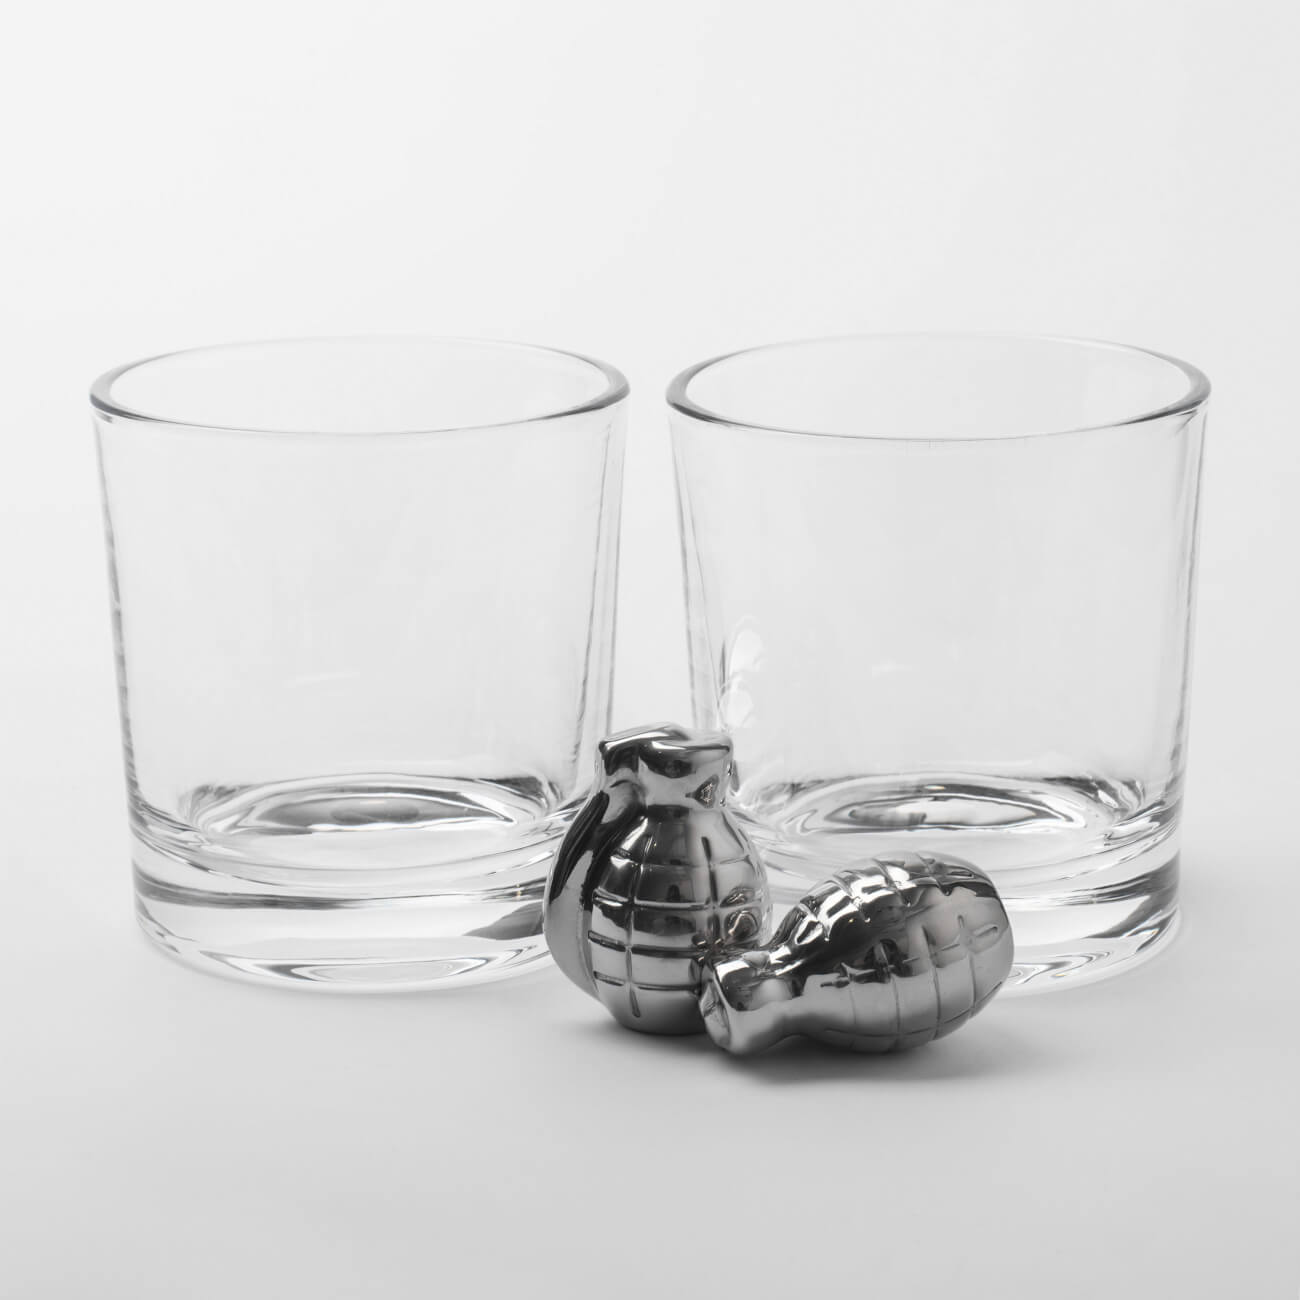 Набор для виски, 2 перс, 4 пр, стаканы/кубики, стекло/сталь, Граната, Bullet набор для виски 1 перс 5 пр в коробке стакан кубики подставка стекло мрамор сланец bar